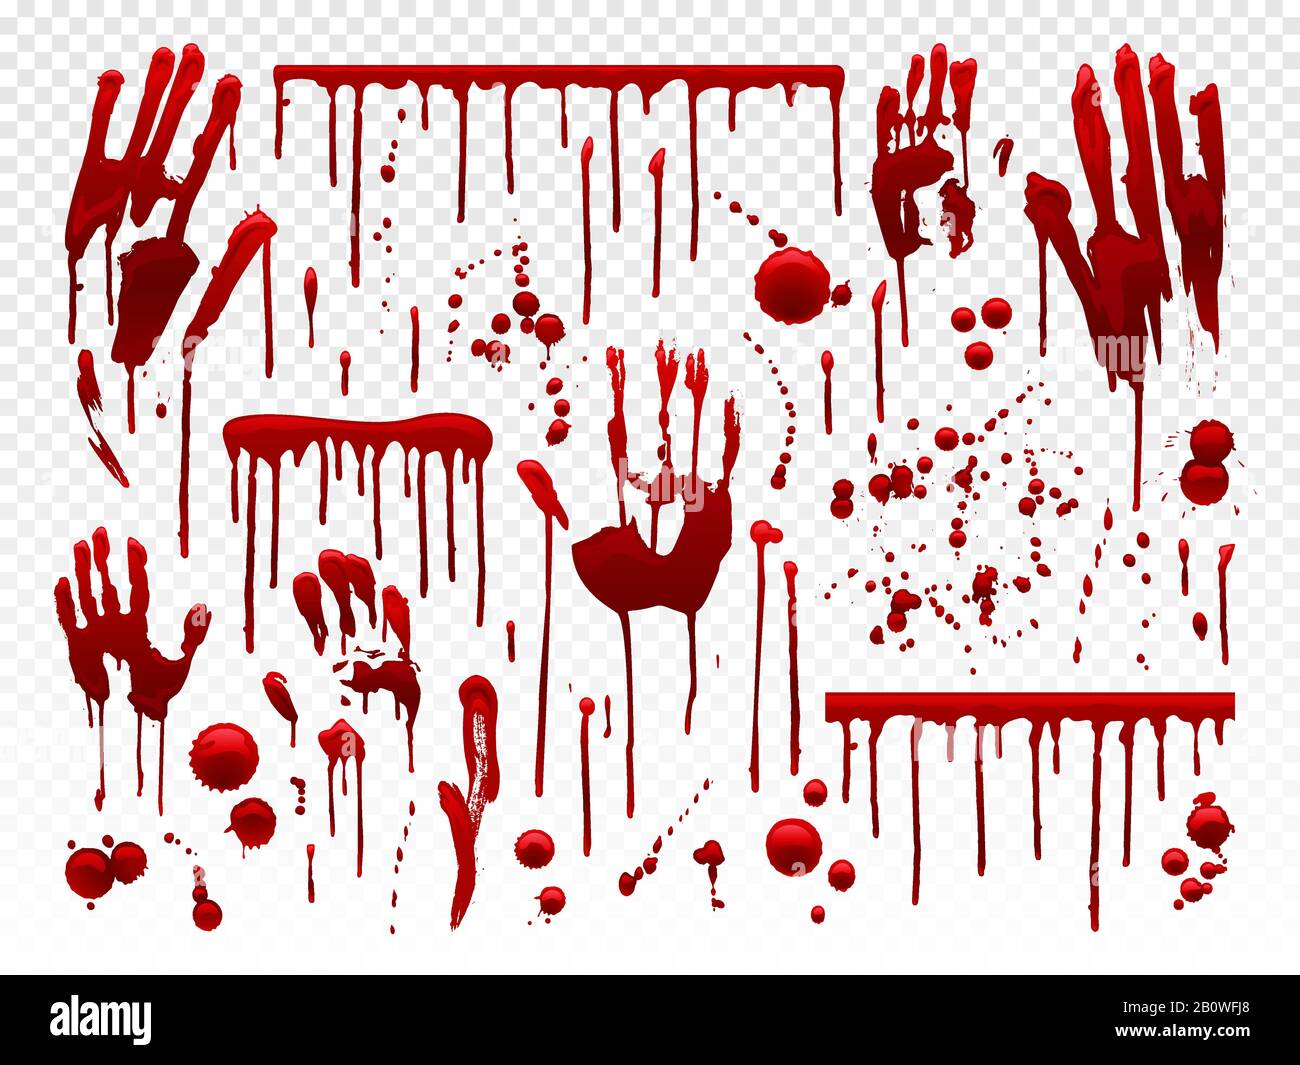 Goutte de sang. Taches de peinture rouge, taches sanglantes halHalloween et traces de sang de saignement de la main. Dripping bloods horreur texture vecteur set Illustration de Vecteur